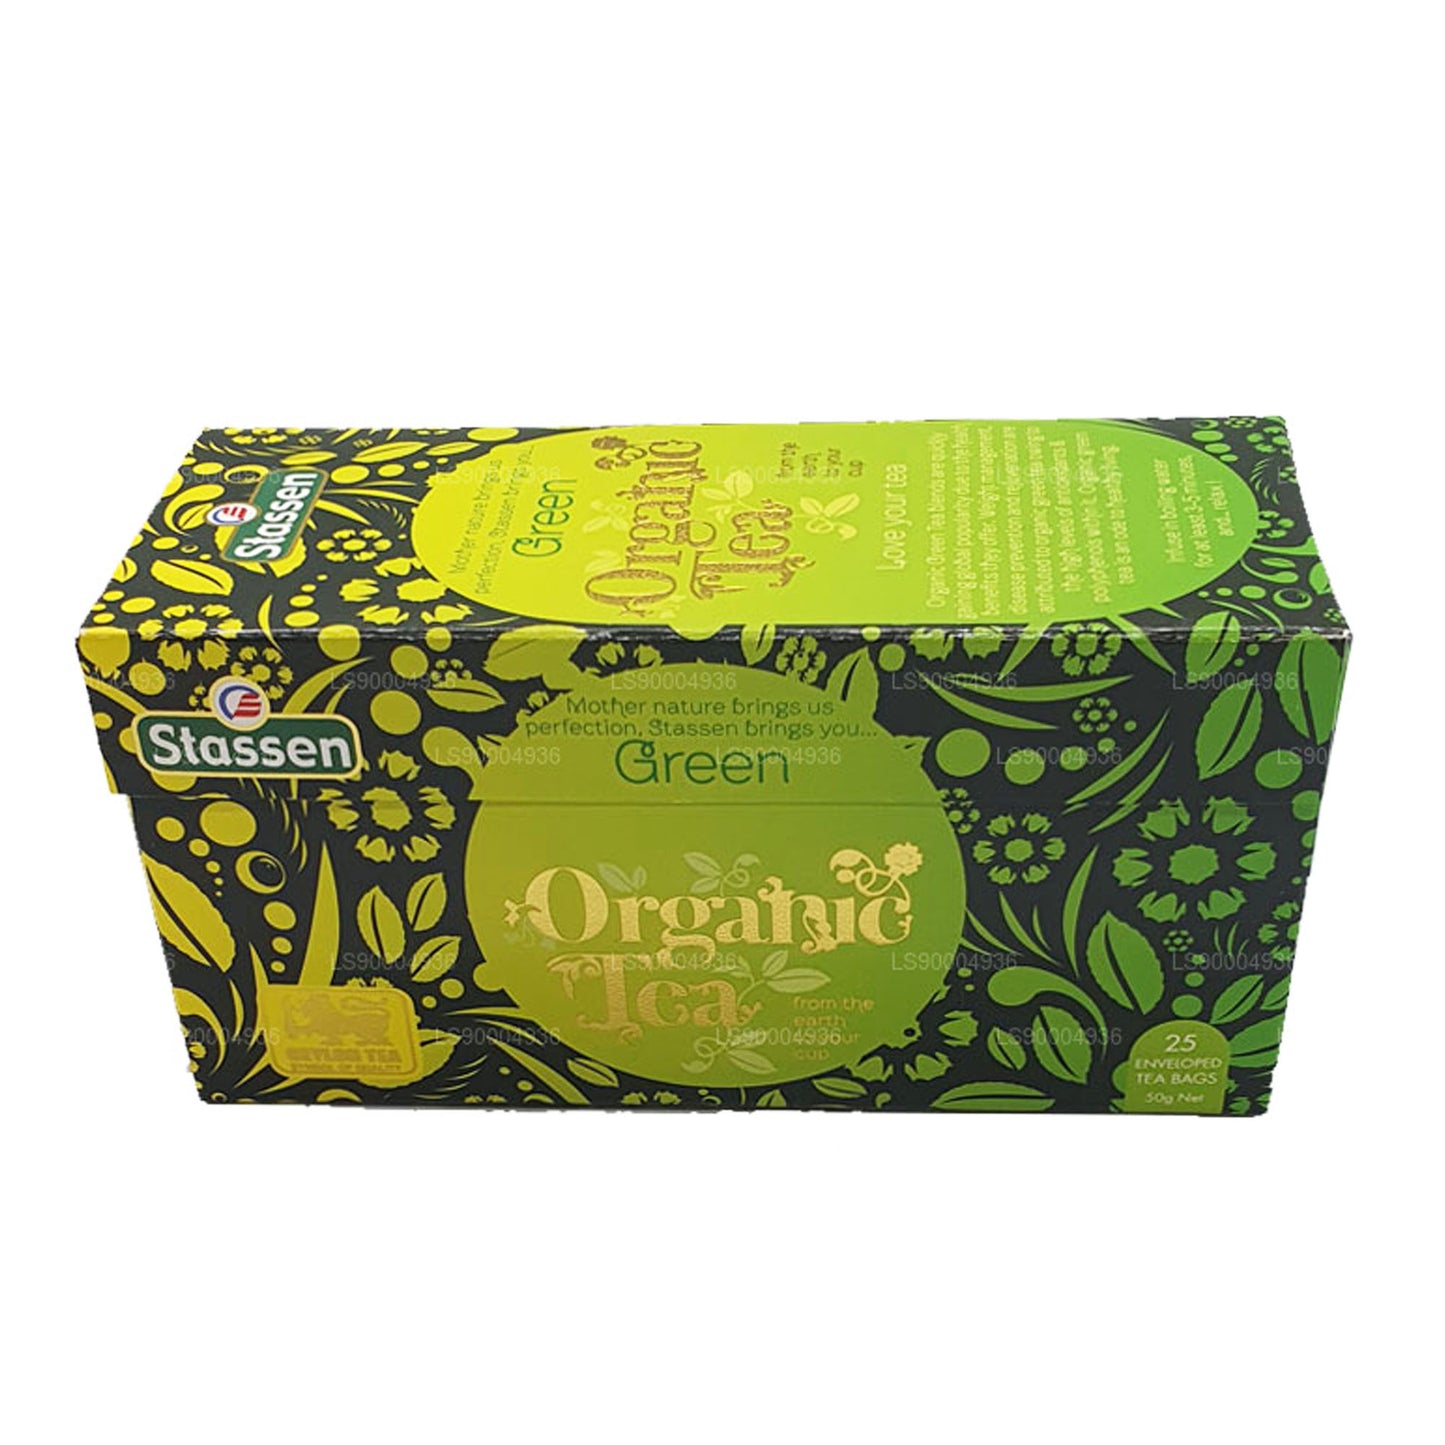 Stassen Zielona Herbata organiczna (50g) 25 torebek